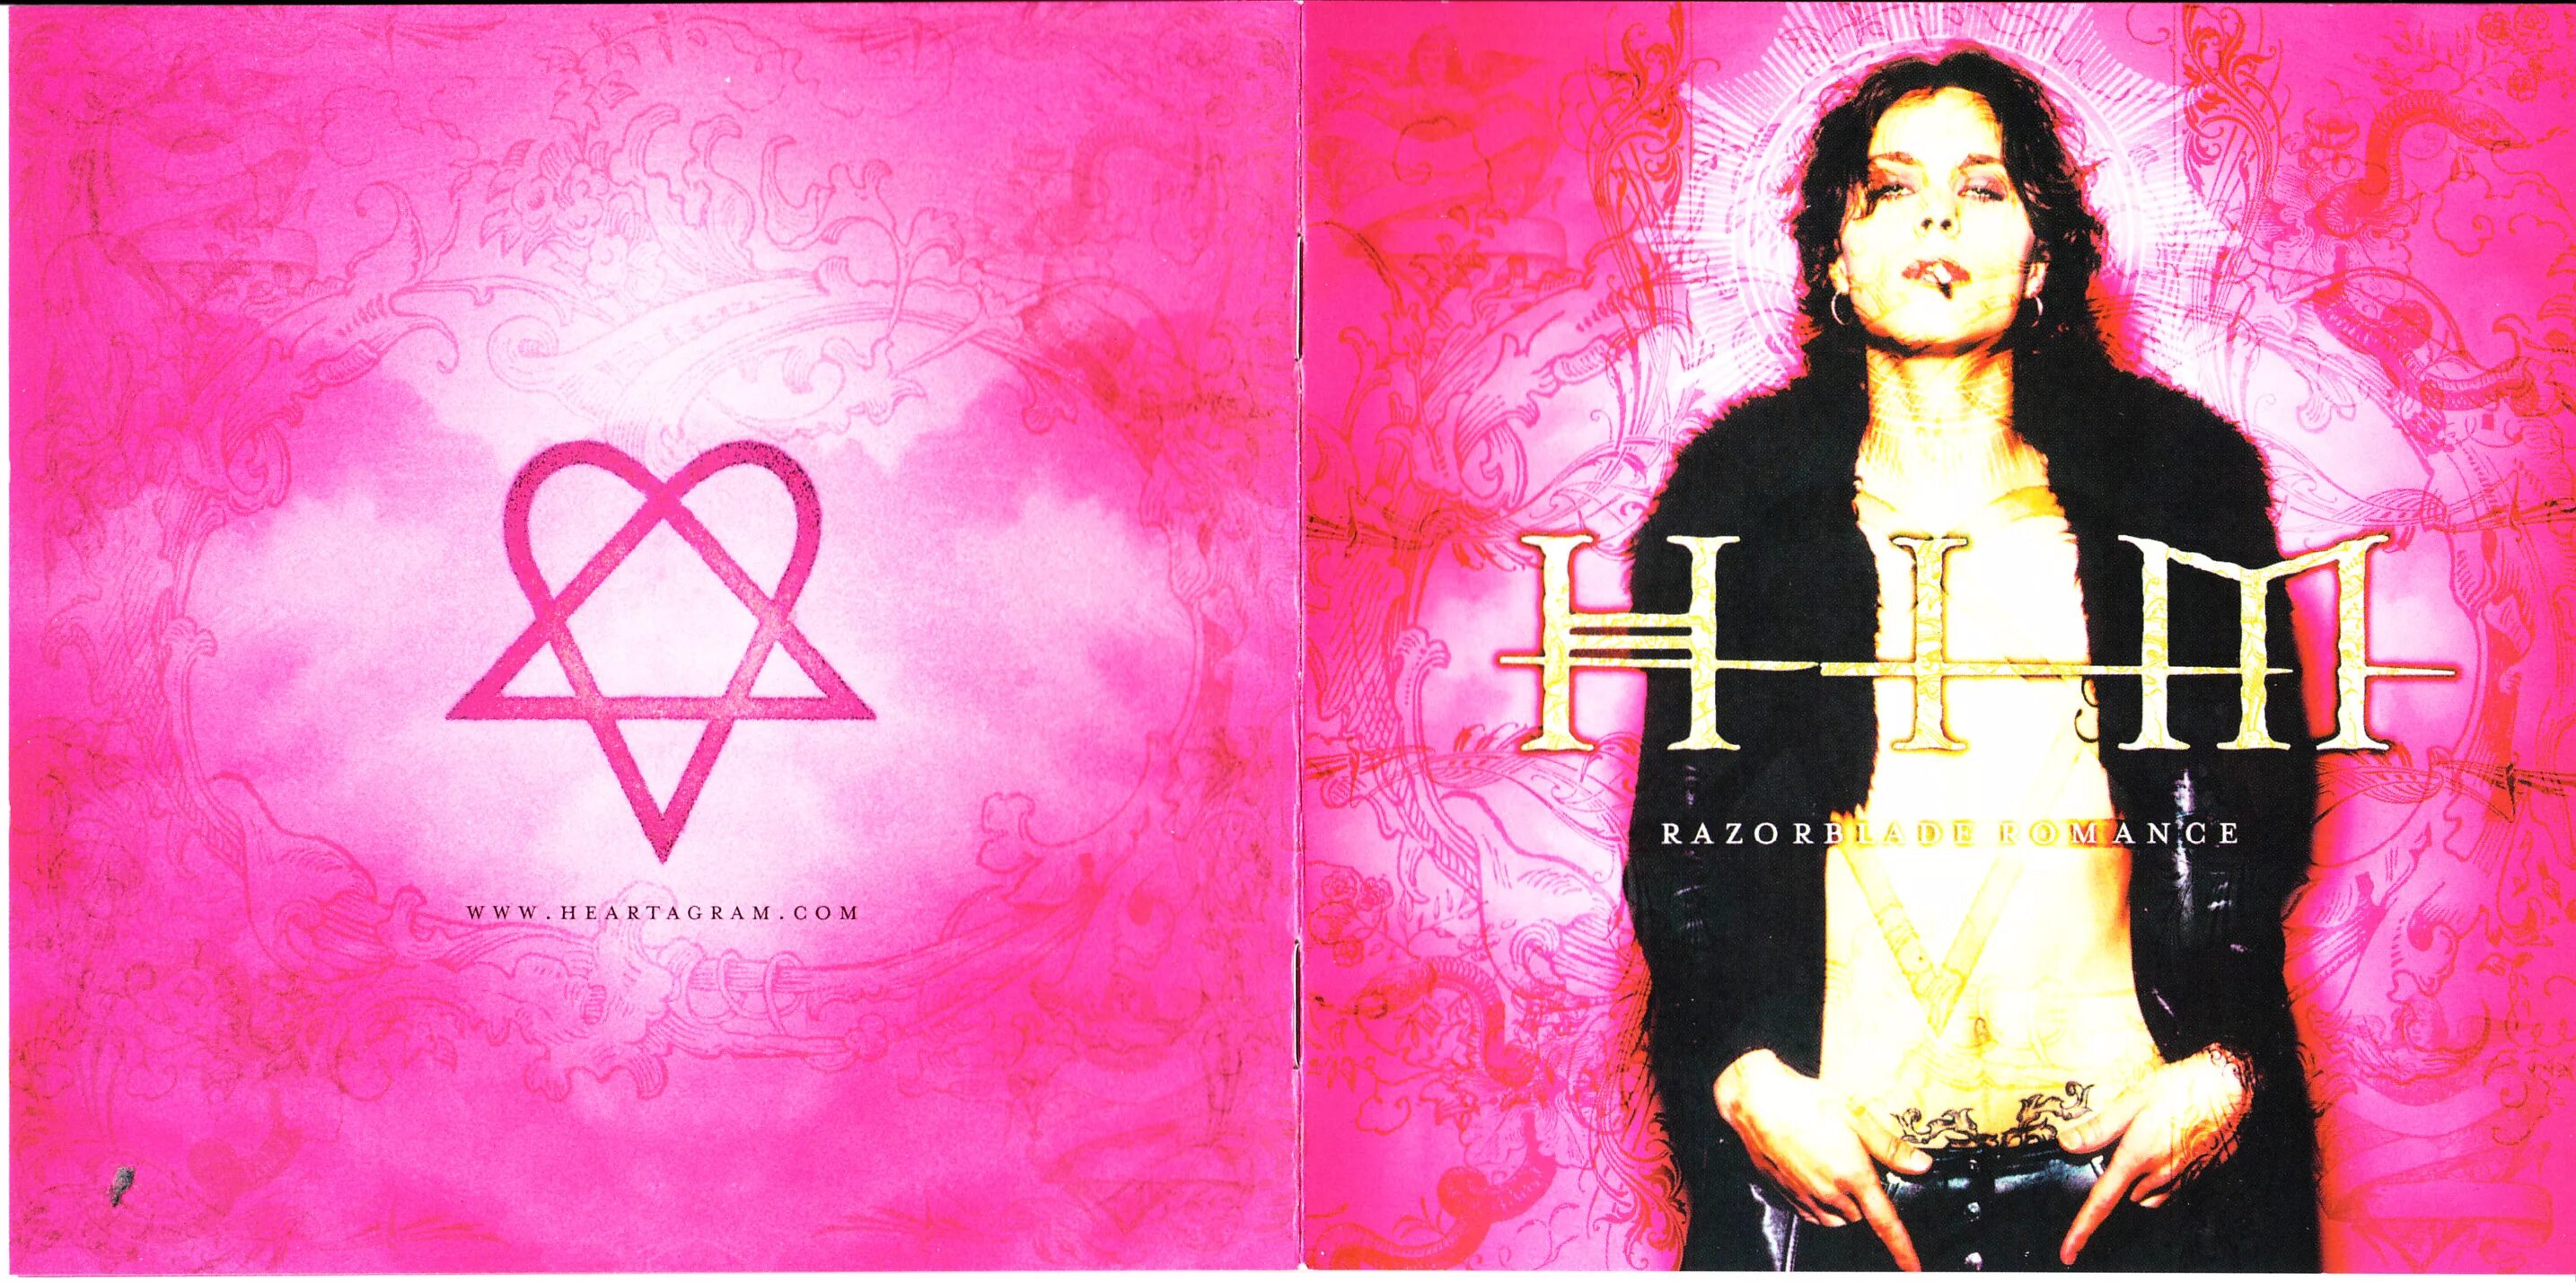 Вилле Вало Razorblade Romance. Him альбом Razorblade Romance. Him 1999 2000 Razorblade Romance. Him Razorblade Romance (1999) обложка. Him romance